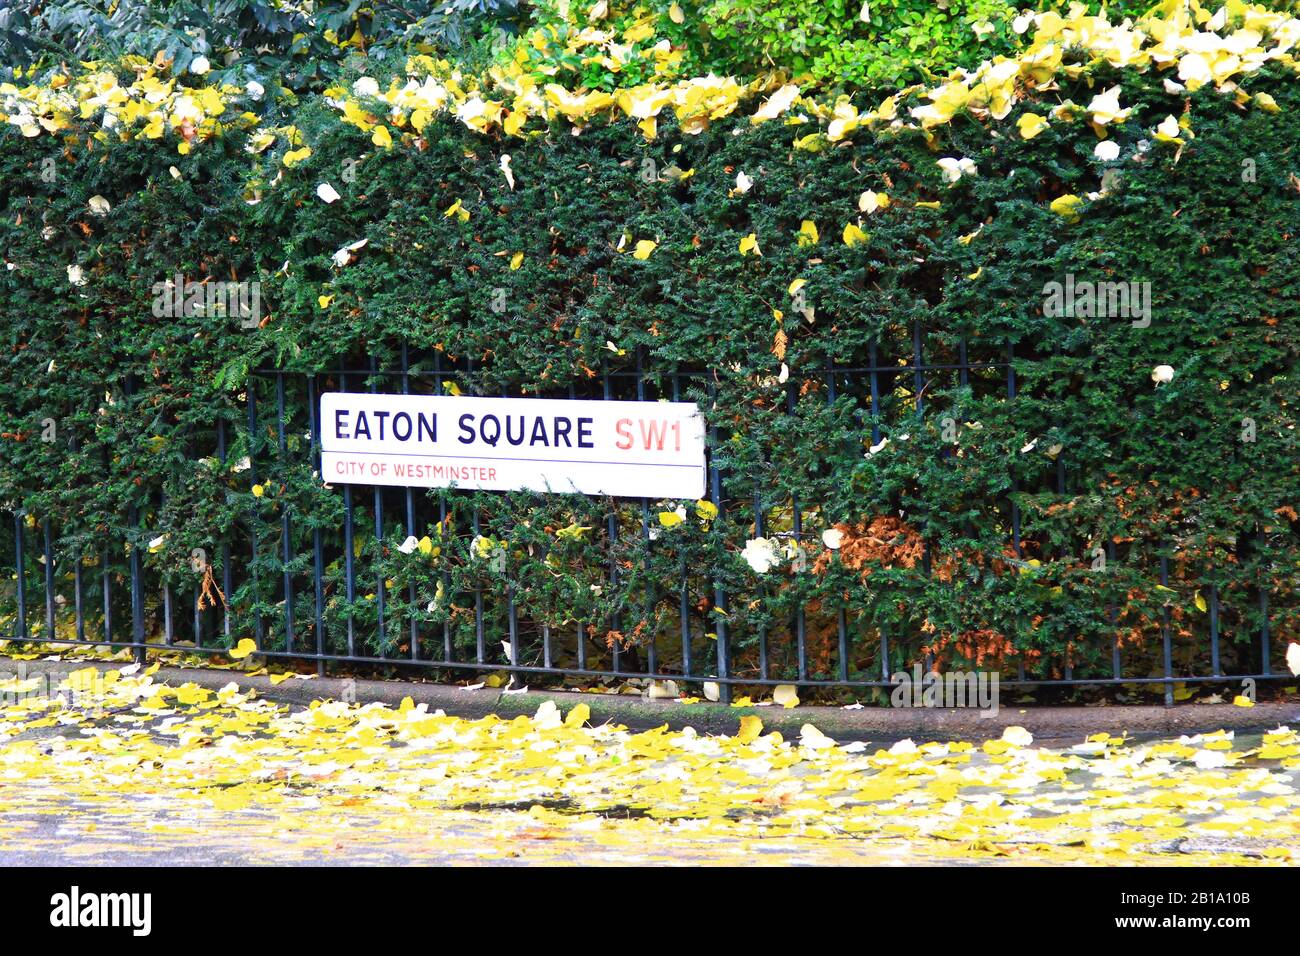 Eaton Square Londres, Reino Unido. Eaton Square, señal de la calle SW1 en una prestigiosa zona del centro de Londres. Altos precios de propiedad. Propiedades de mercado ascendente. Eaton Square a veces se asocia con Eton College, pero el colegio no está ubicado En Eaton Square . Eaton Square está situado en Belgravia, Londres. Dirección prestigiosa. Altos precios de propiedad. Ciudad verde. Foto de stock